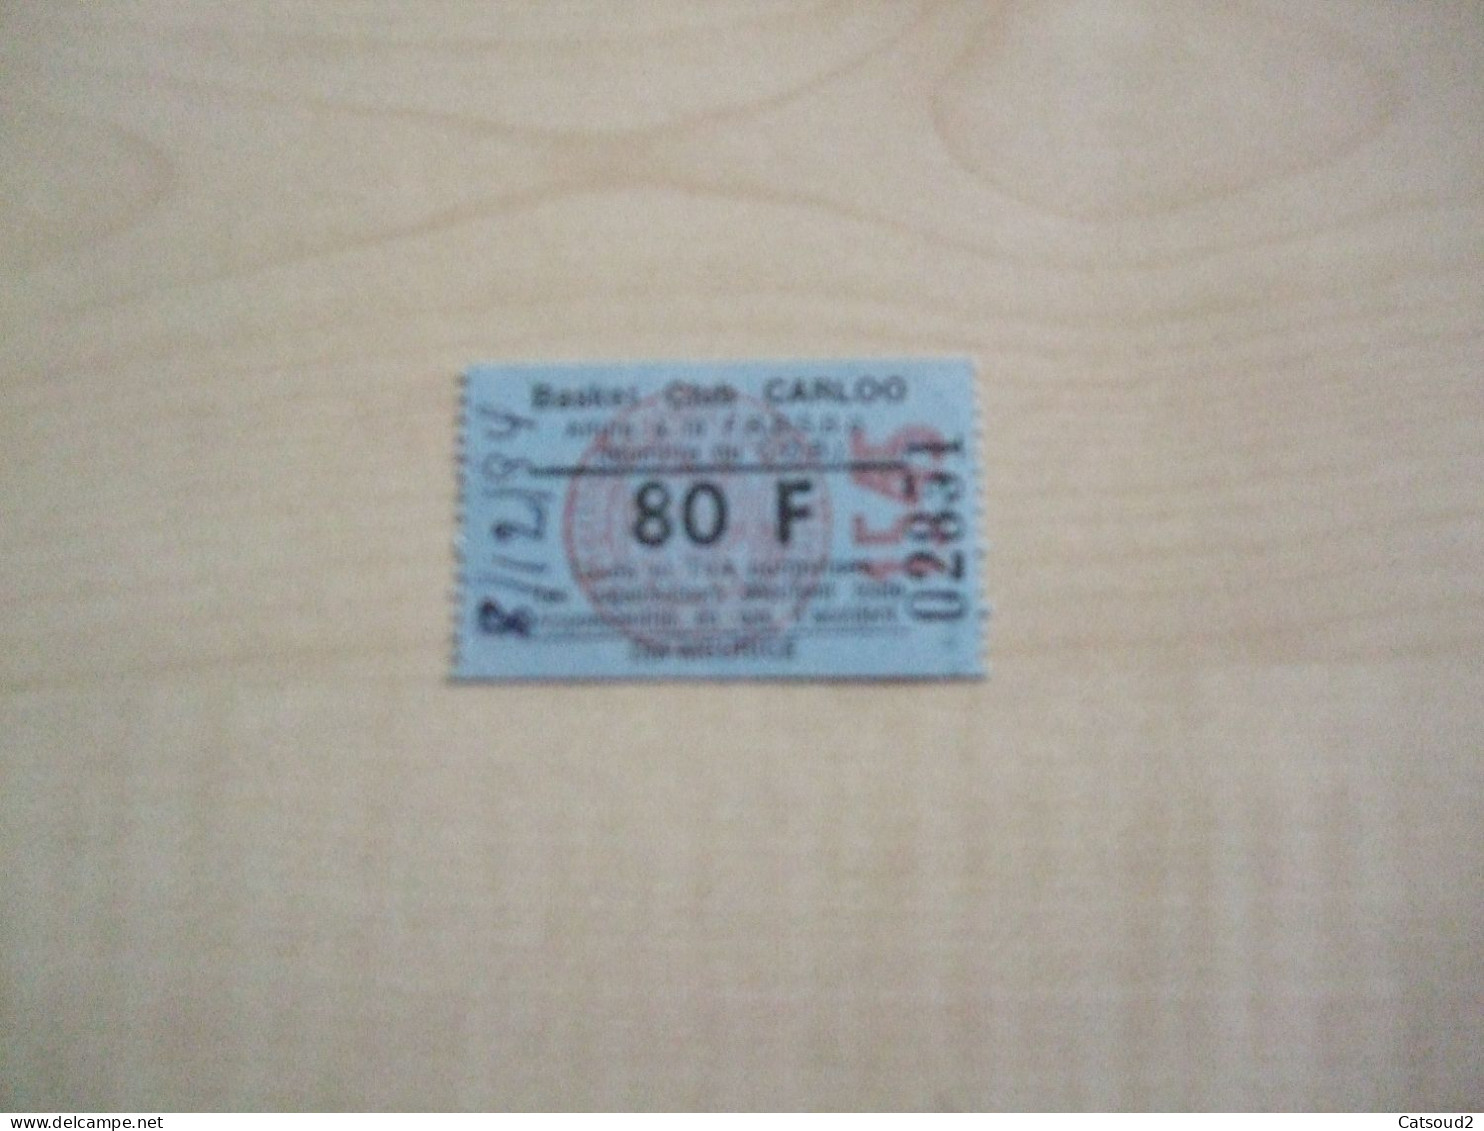 Ancien Ticket BASKET CLUB CARLOO - Toegangskaarten